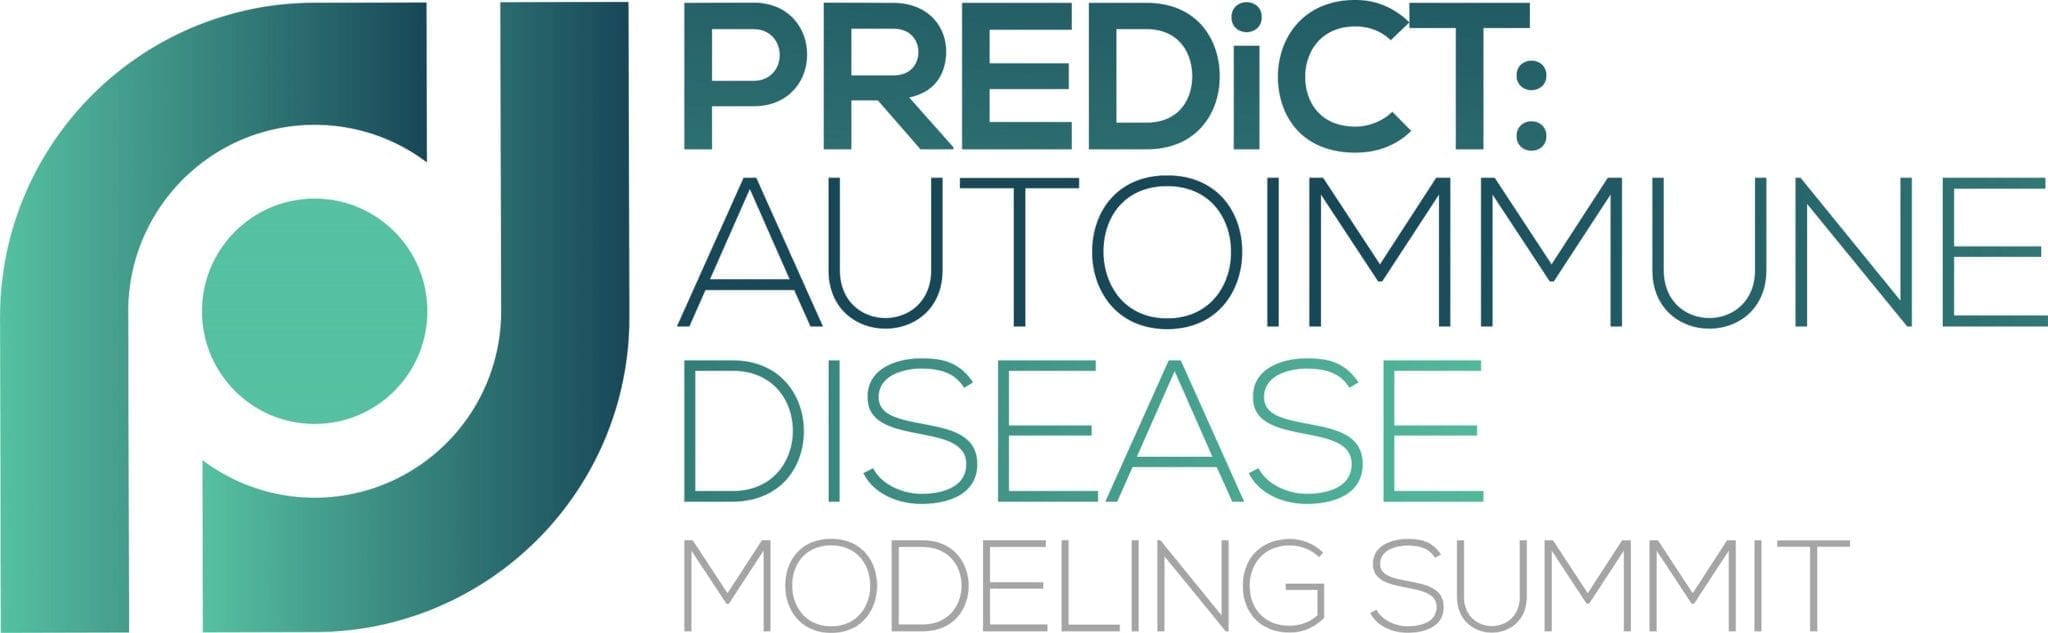 HW191031-PREDiCT-Autoimmune-Disease-Modelling-Summit-logo-FINAL